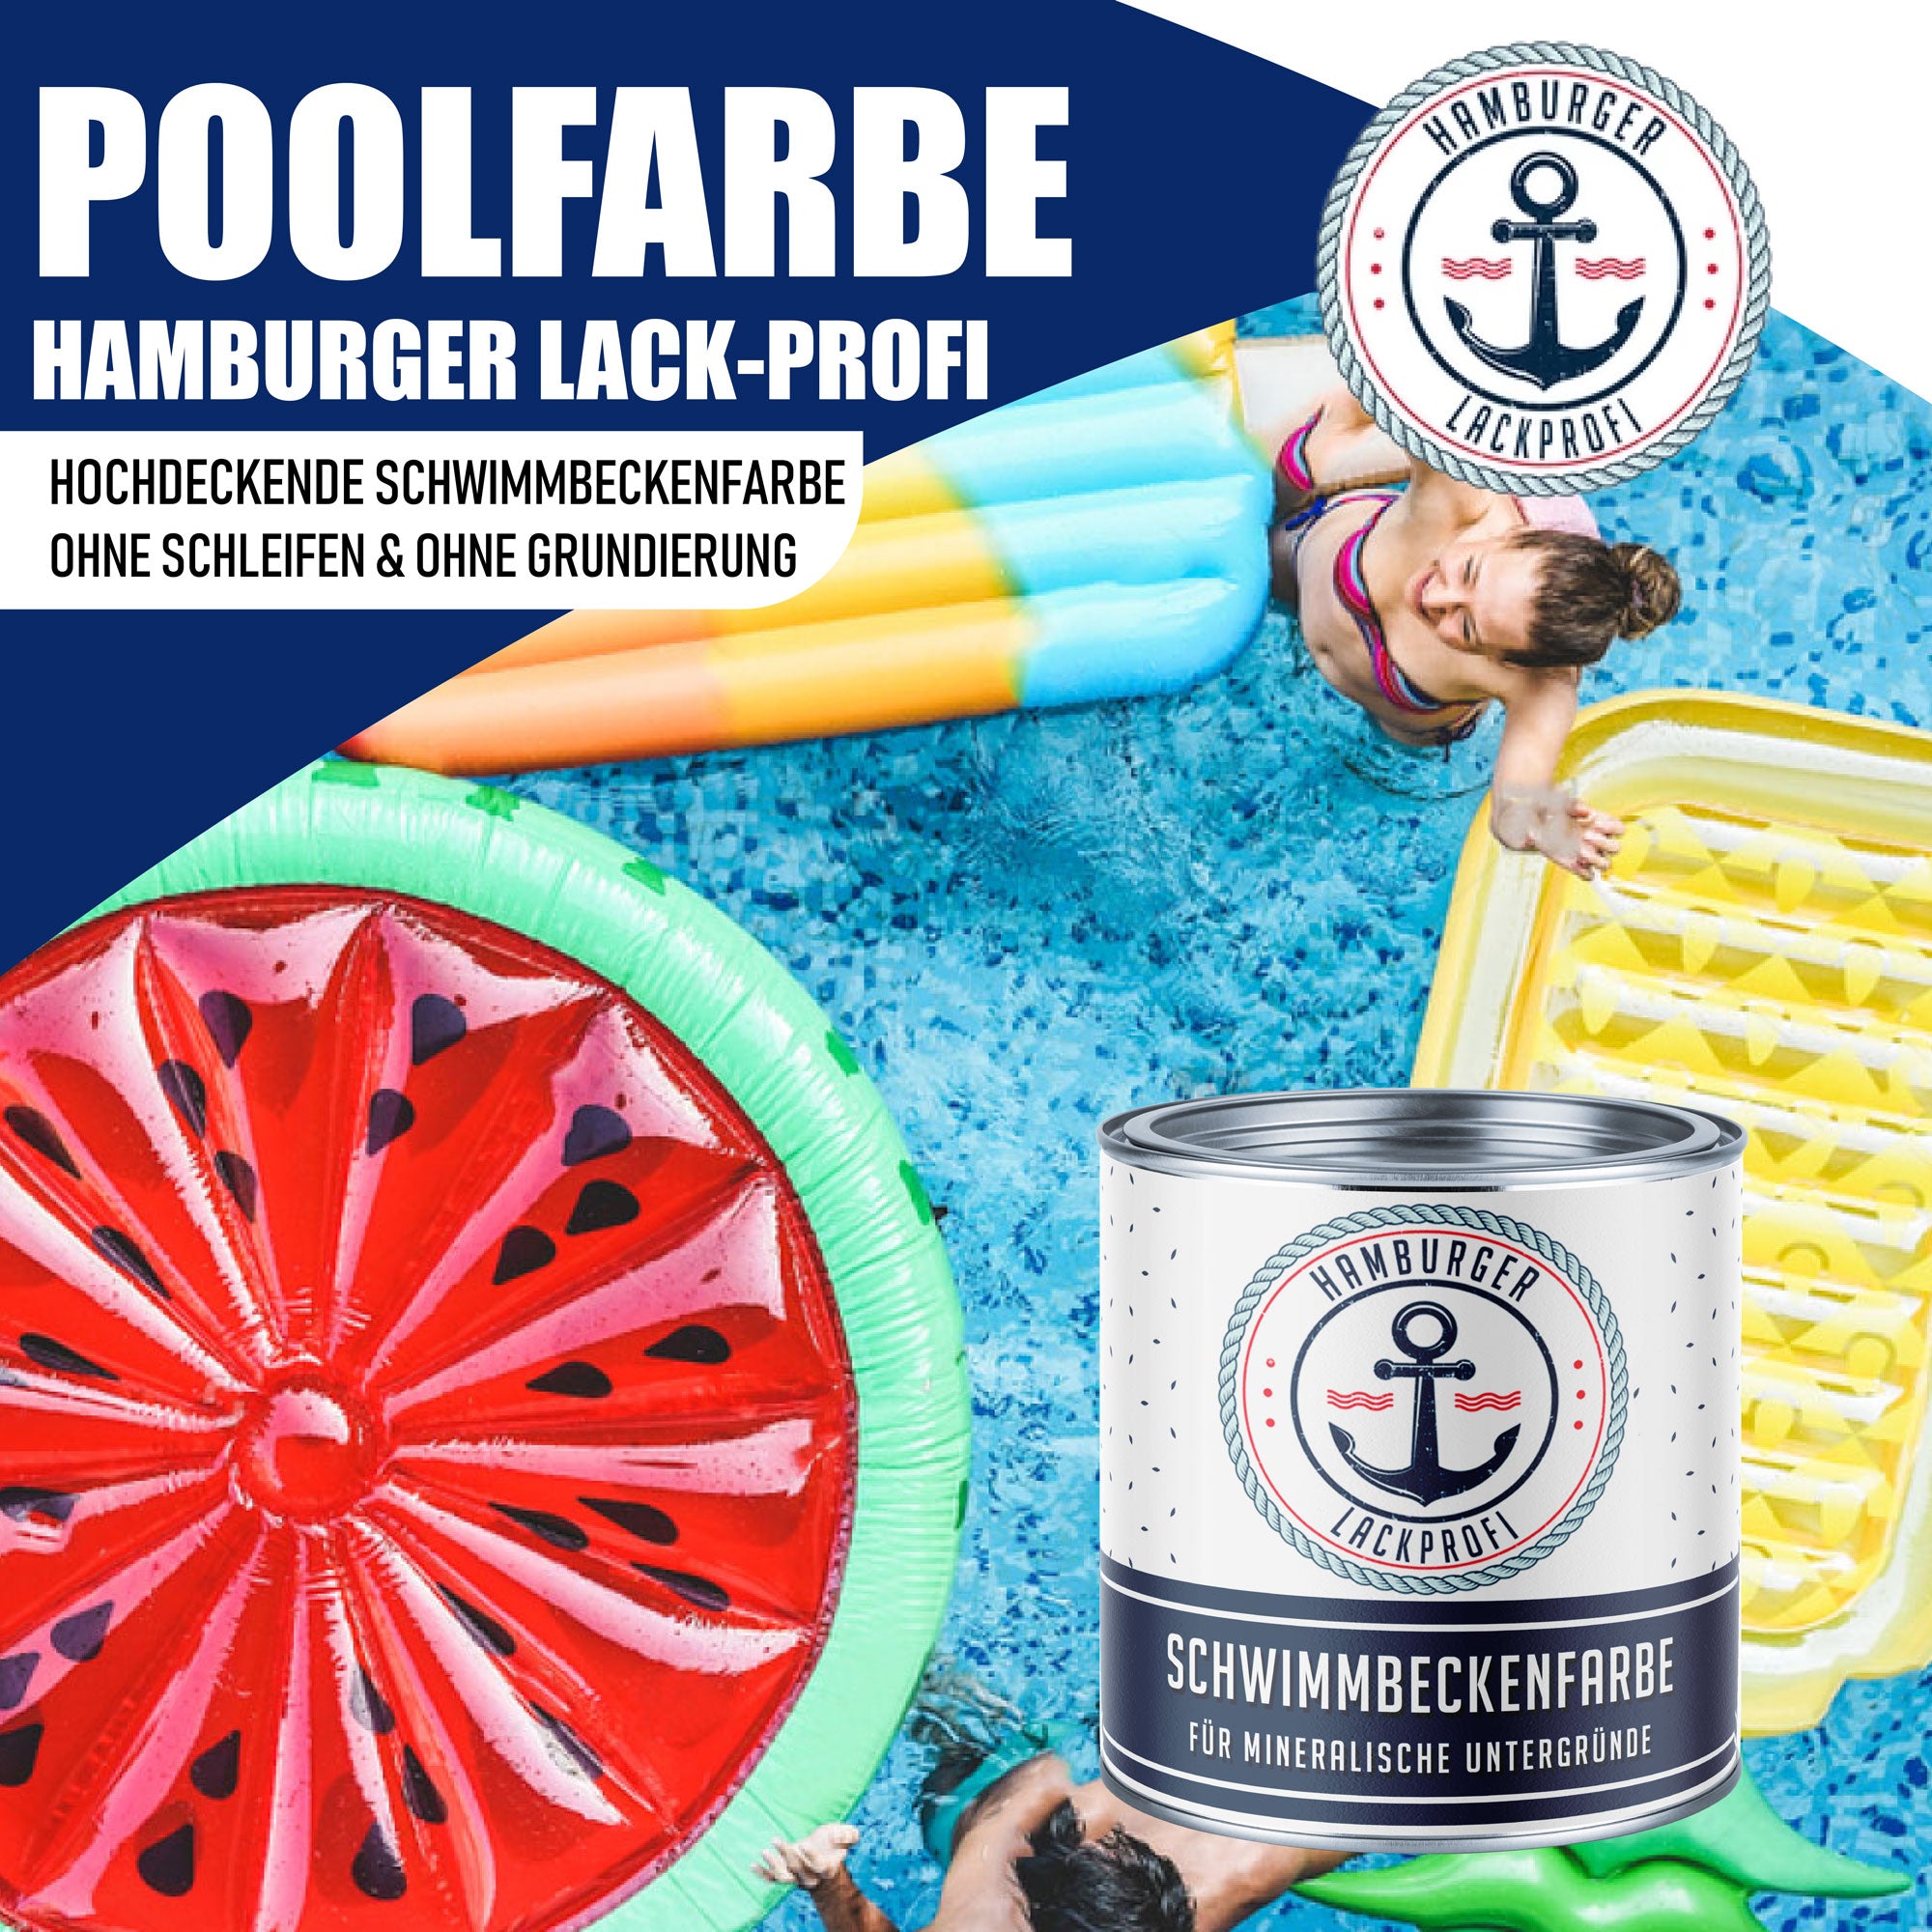 Hamburger Lack-Profi Schwimmbeckenfarbe Schwarzbraun RAL 8022 - hochdeckende Poolfarbe